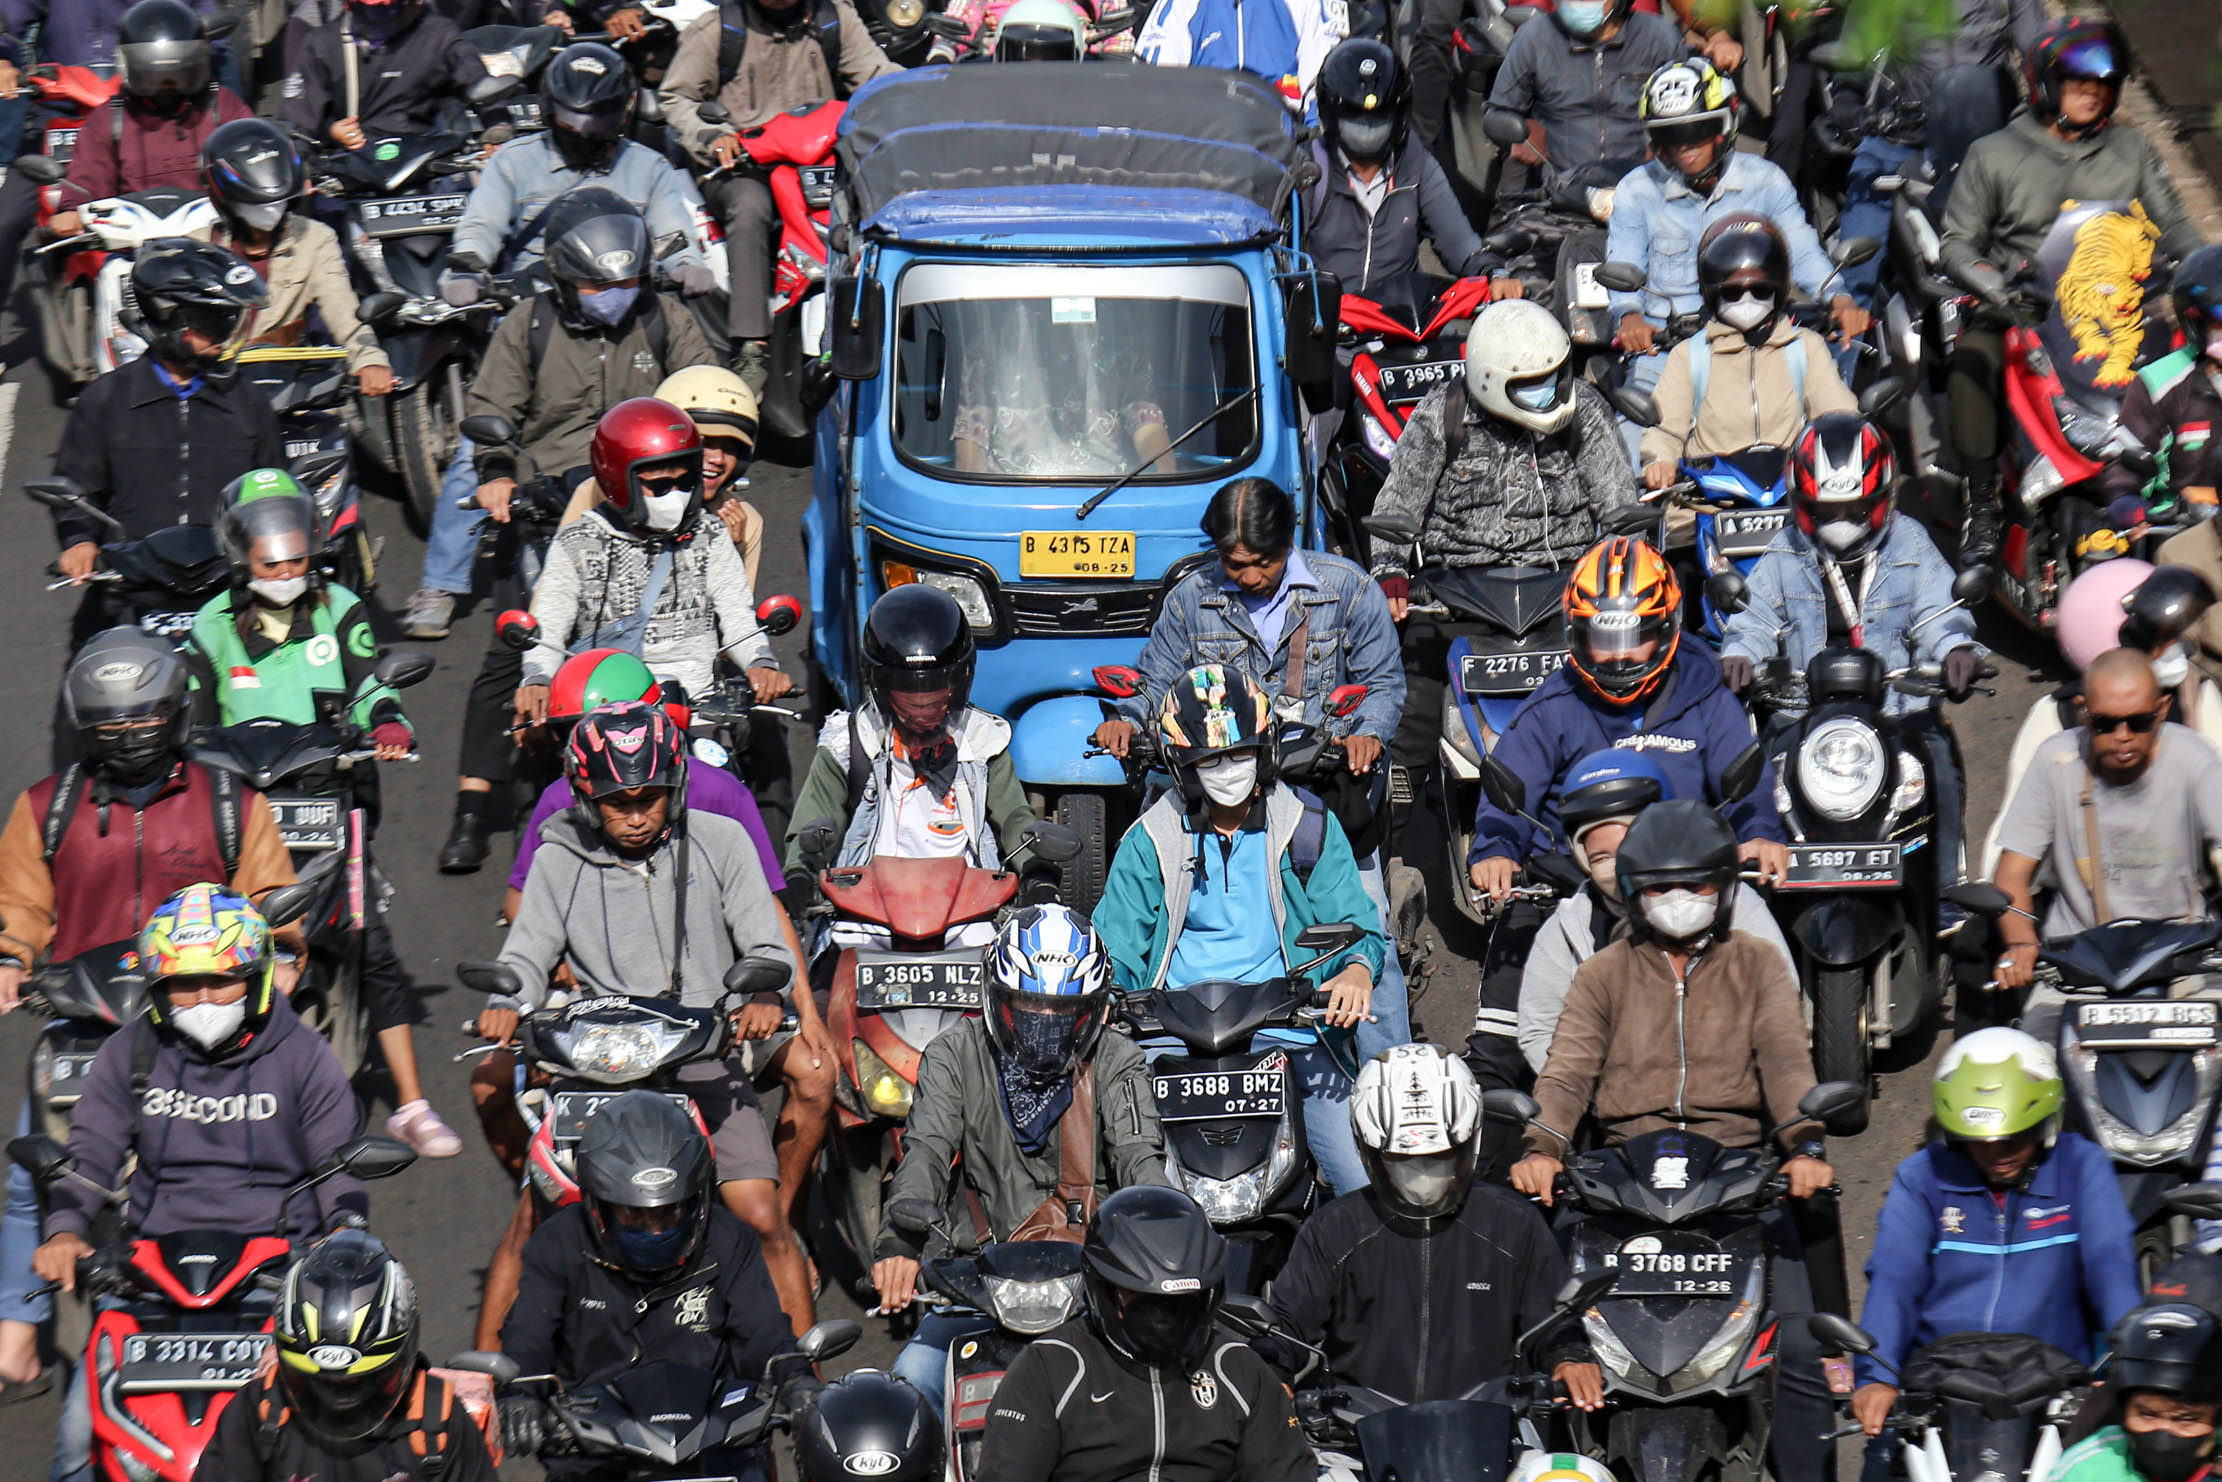 Sejumlah kendaraan terjebak kemacetan di Jalan Daan Mogot, Jakarta. Korlantas Polri mencatat populasi kendaraan bermotor yang aktif di wilayah DKI Jakarta dan sekitarnya (Bekasi, Tangerang, Depok, Bogor) per 10 Februari 2023 mencapai 21.755.106 unit dari total 152.565.905 populasi yang ada di Indonesia. Foto : Panji Asmoro/TrenAsia